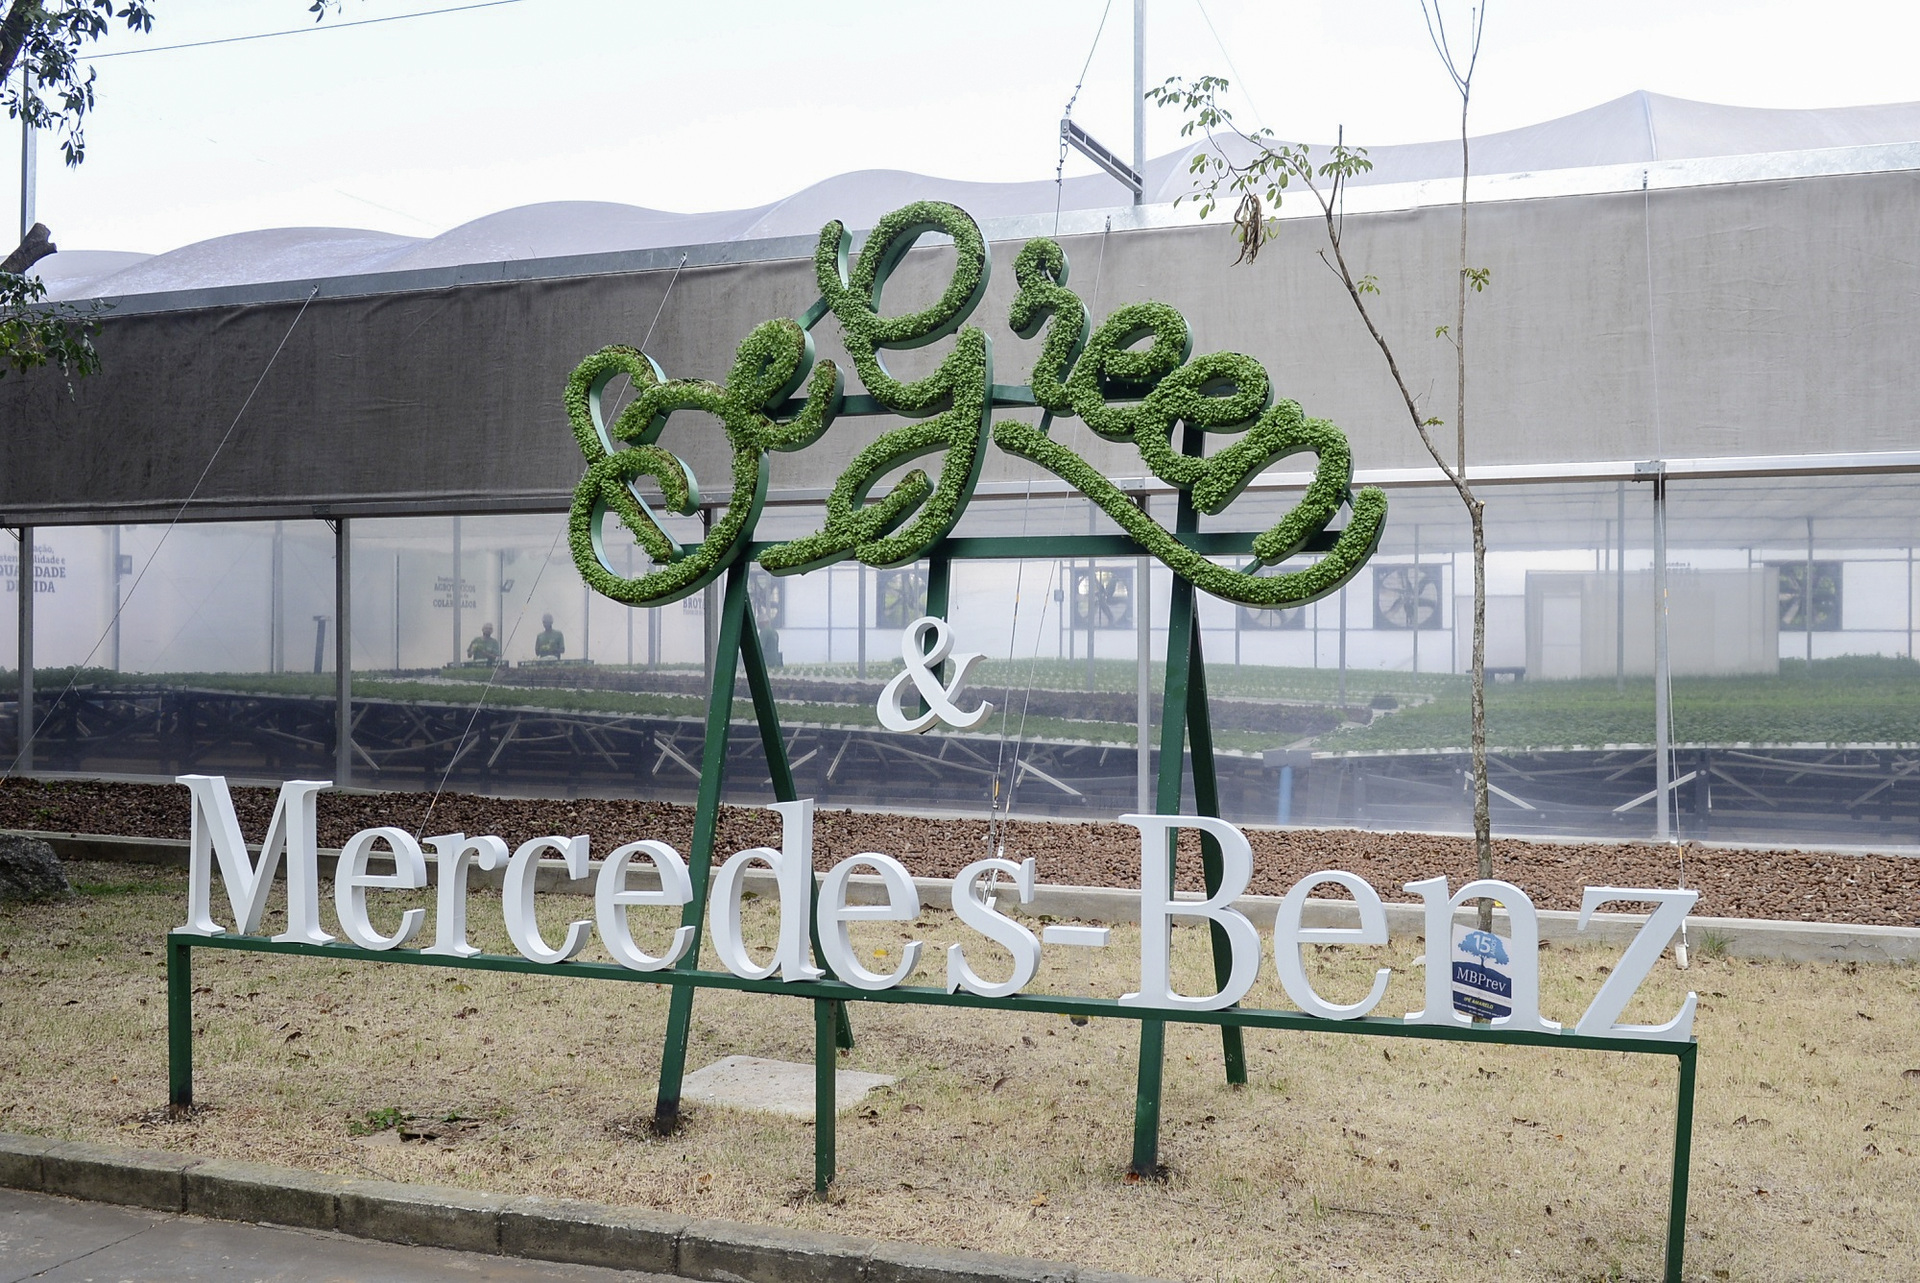 Daimler Trucks & Buses Werk in Brasilien eröffnet „Urban Farm” für eigenen Gemüseanbau